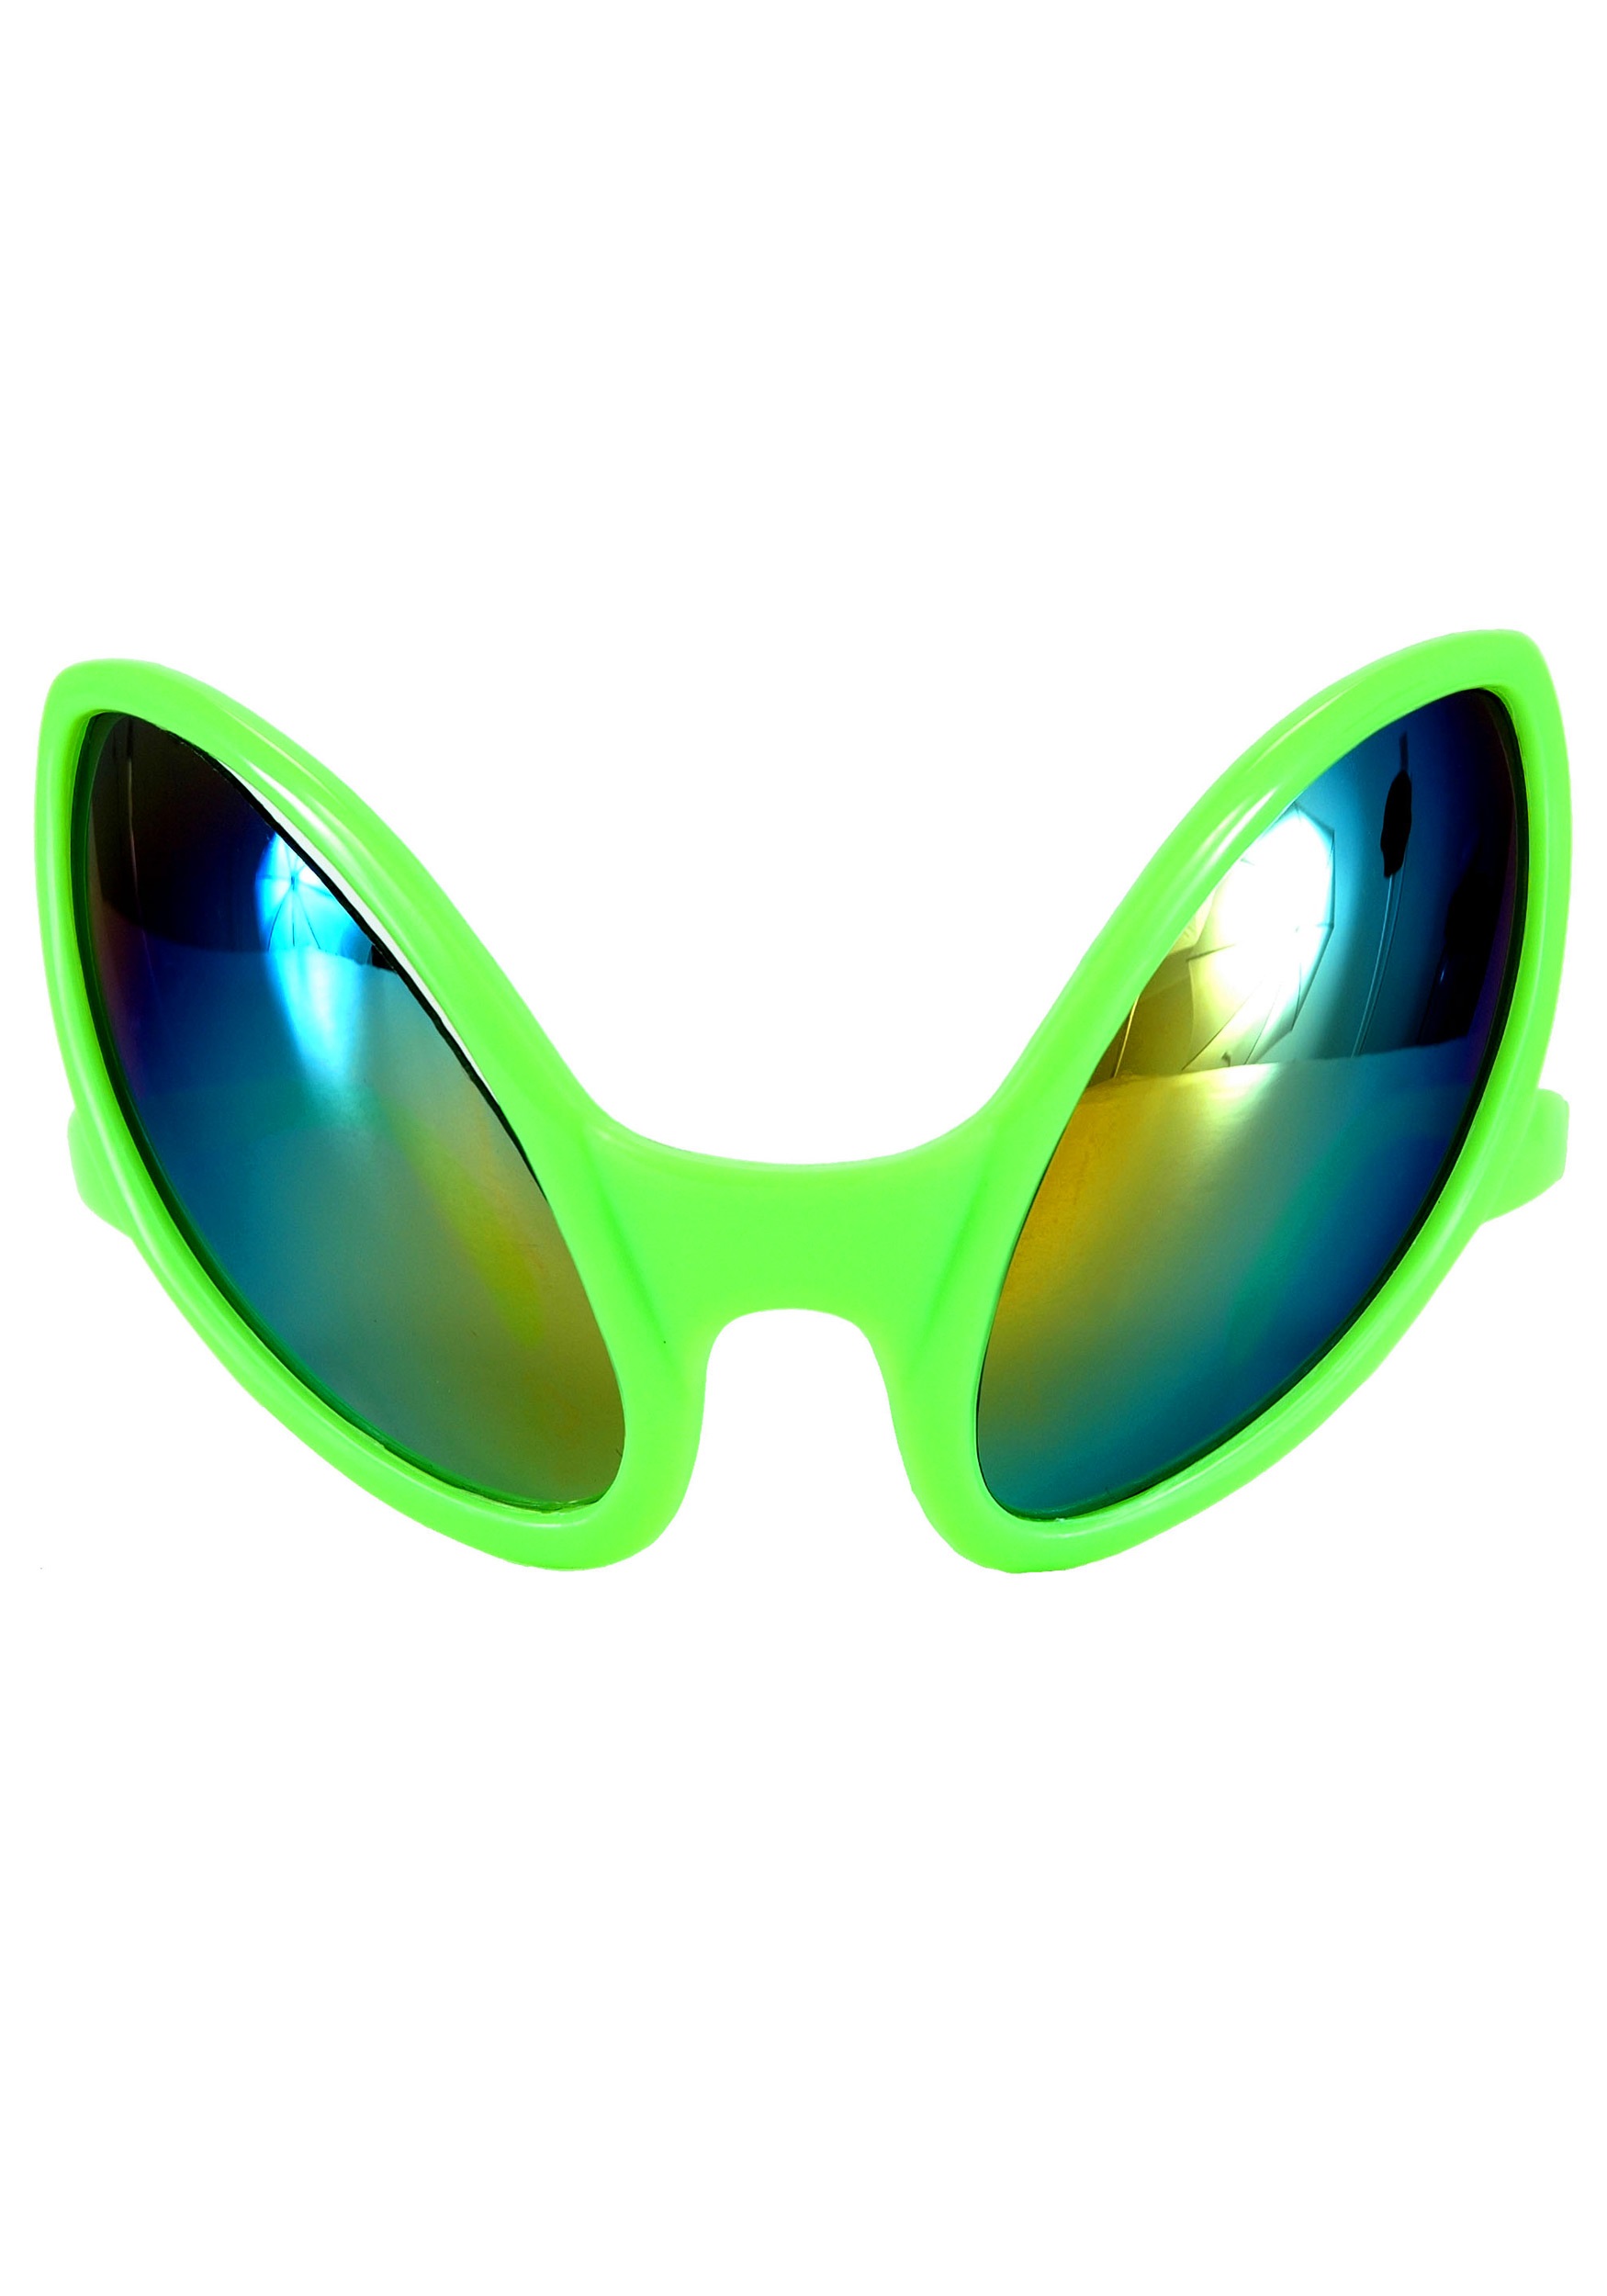 Close Encounter Green Alien Costume Glasses